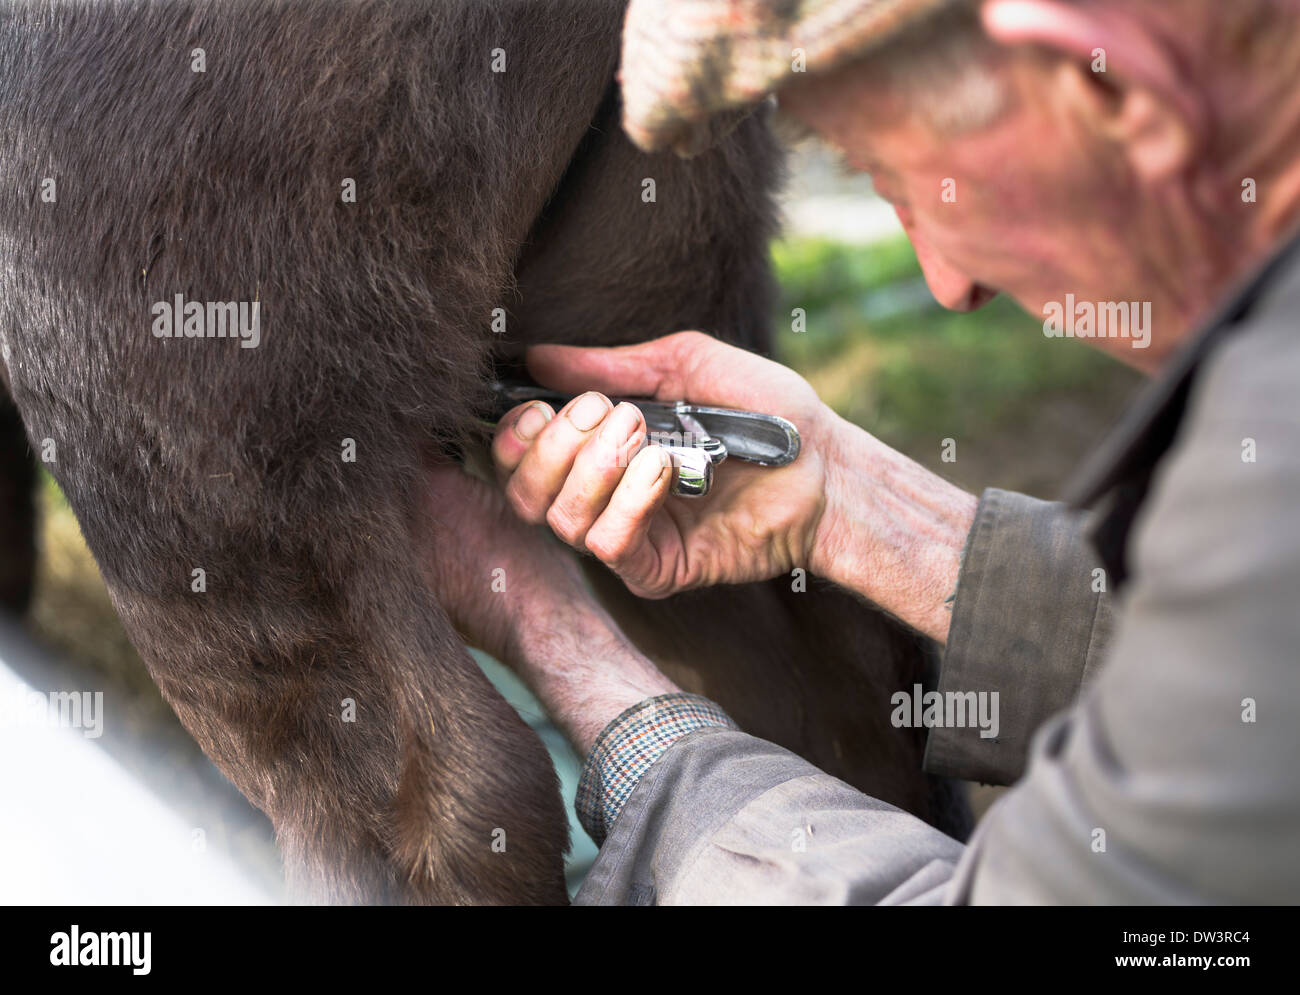 dh GANADO Reino Unido Agricultor castrante ternero joven toro castrado animal Foto de stock